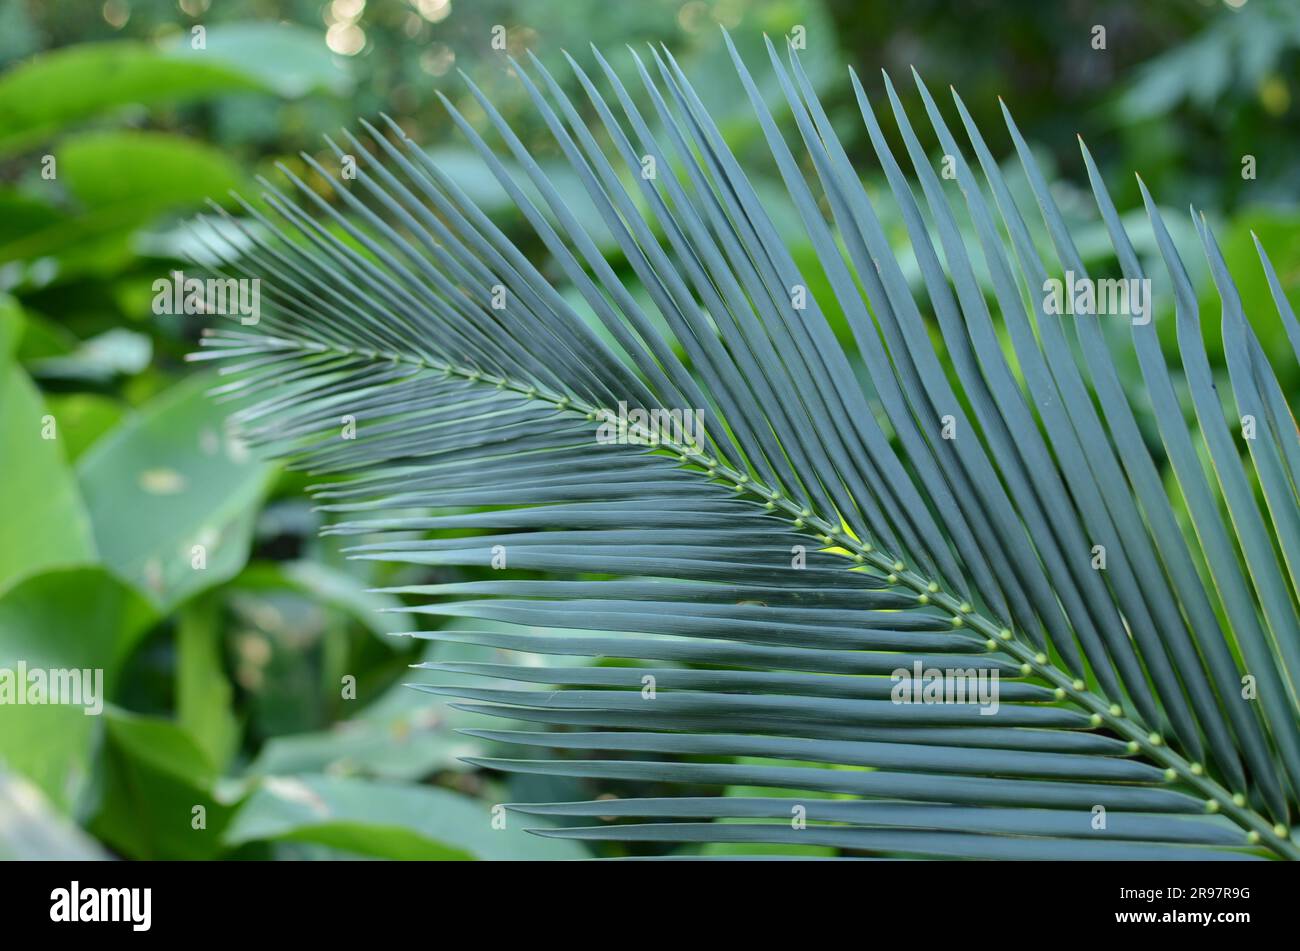 Native New Zealand Palm Tree Stock Photo